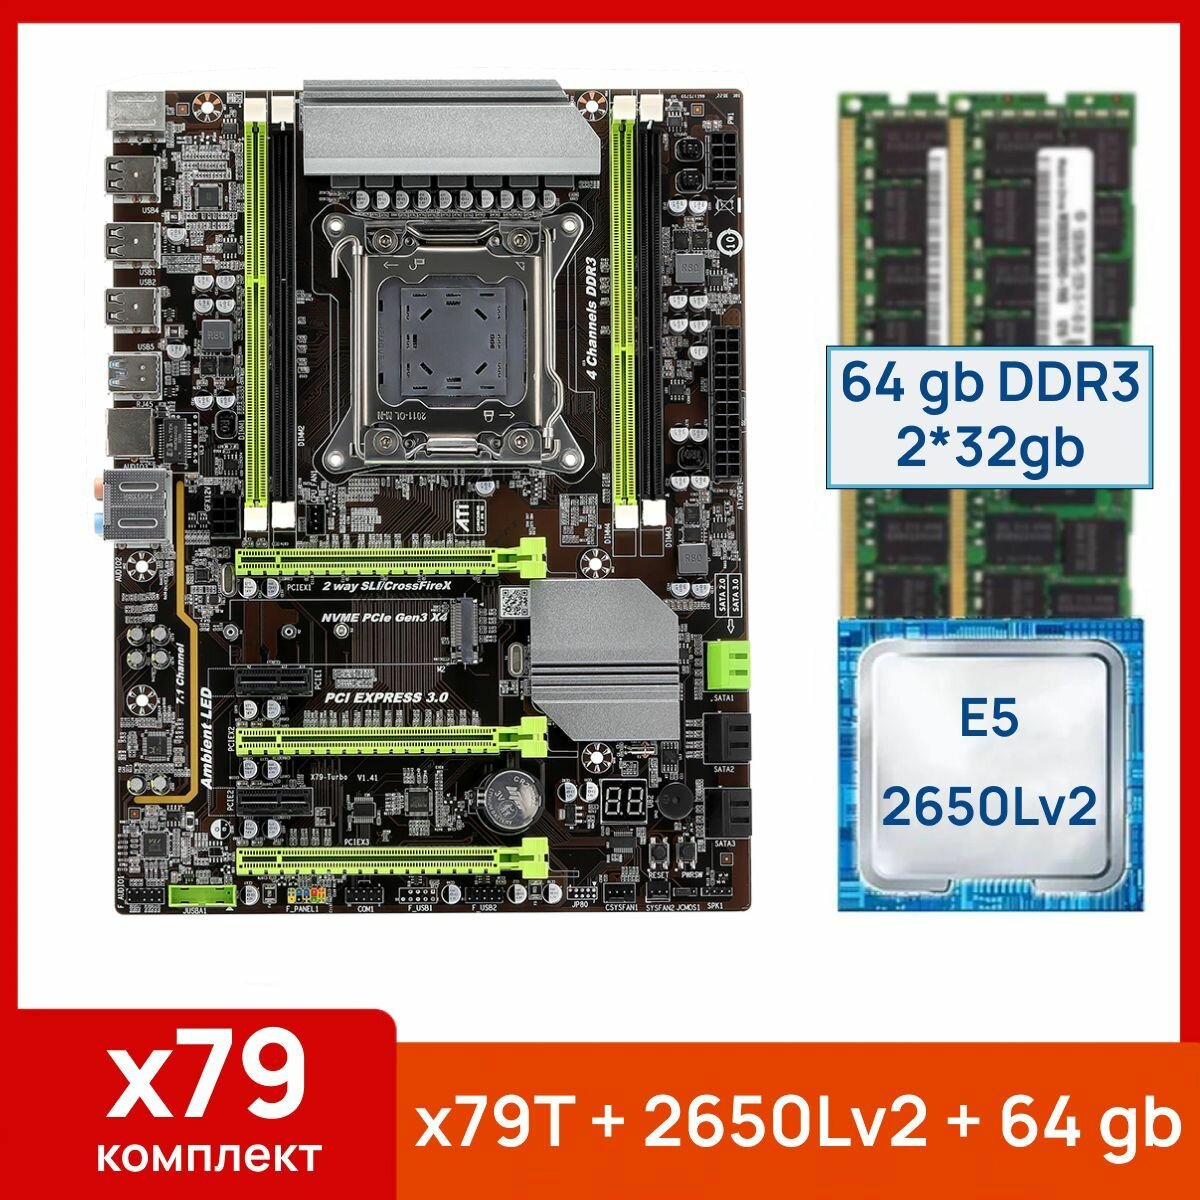 Комплект: Atermiter x79-Turbo + Xeon E5 2650Lv2 + 64 gb(2x32gb) DDR3 ecc reg